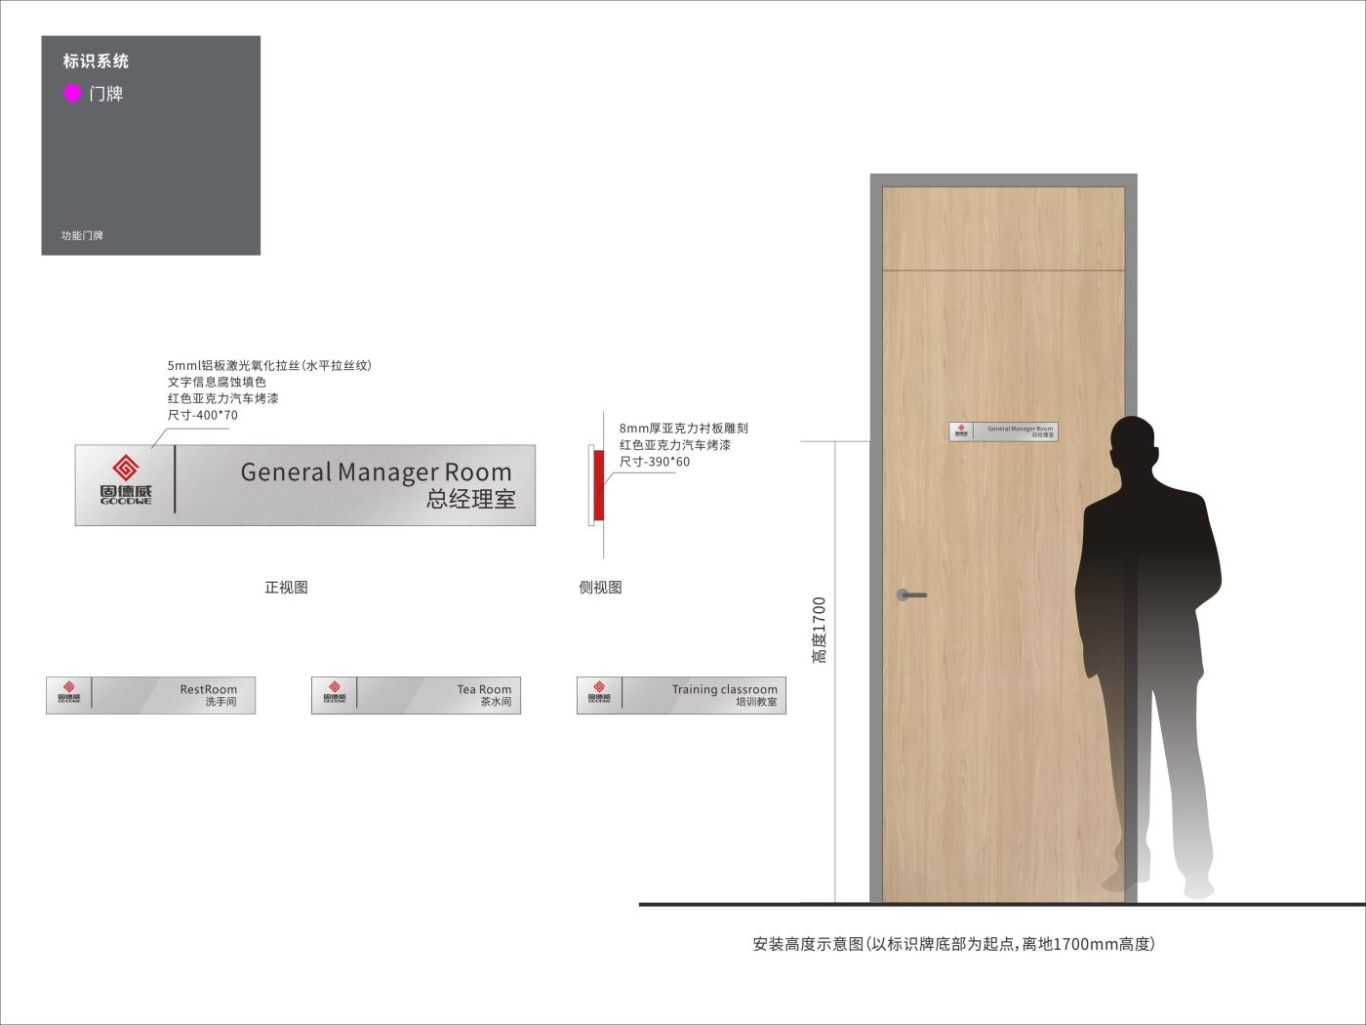 江苏固德威办公大楼导视标识系统设计案例图11